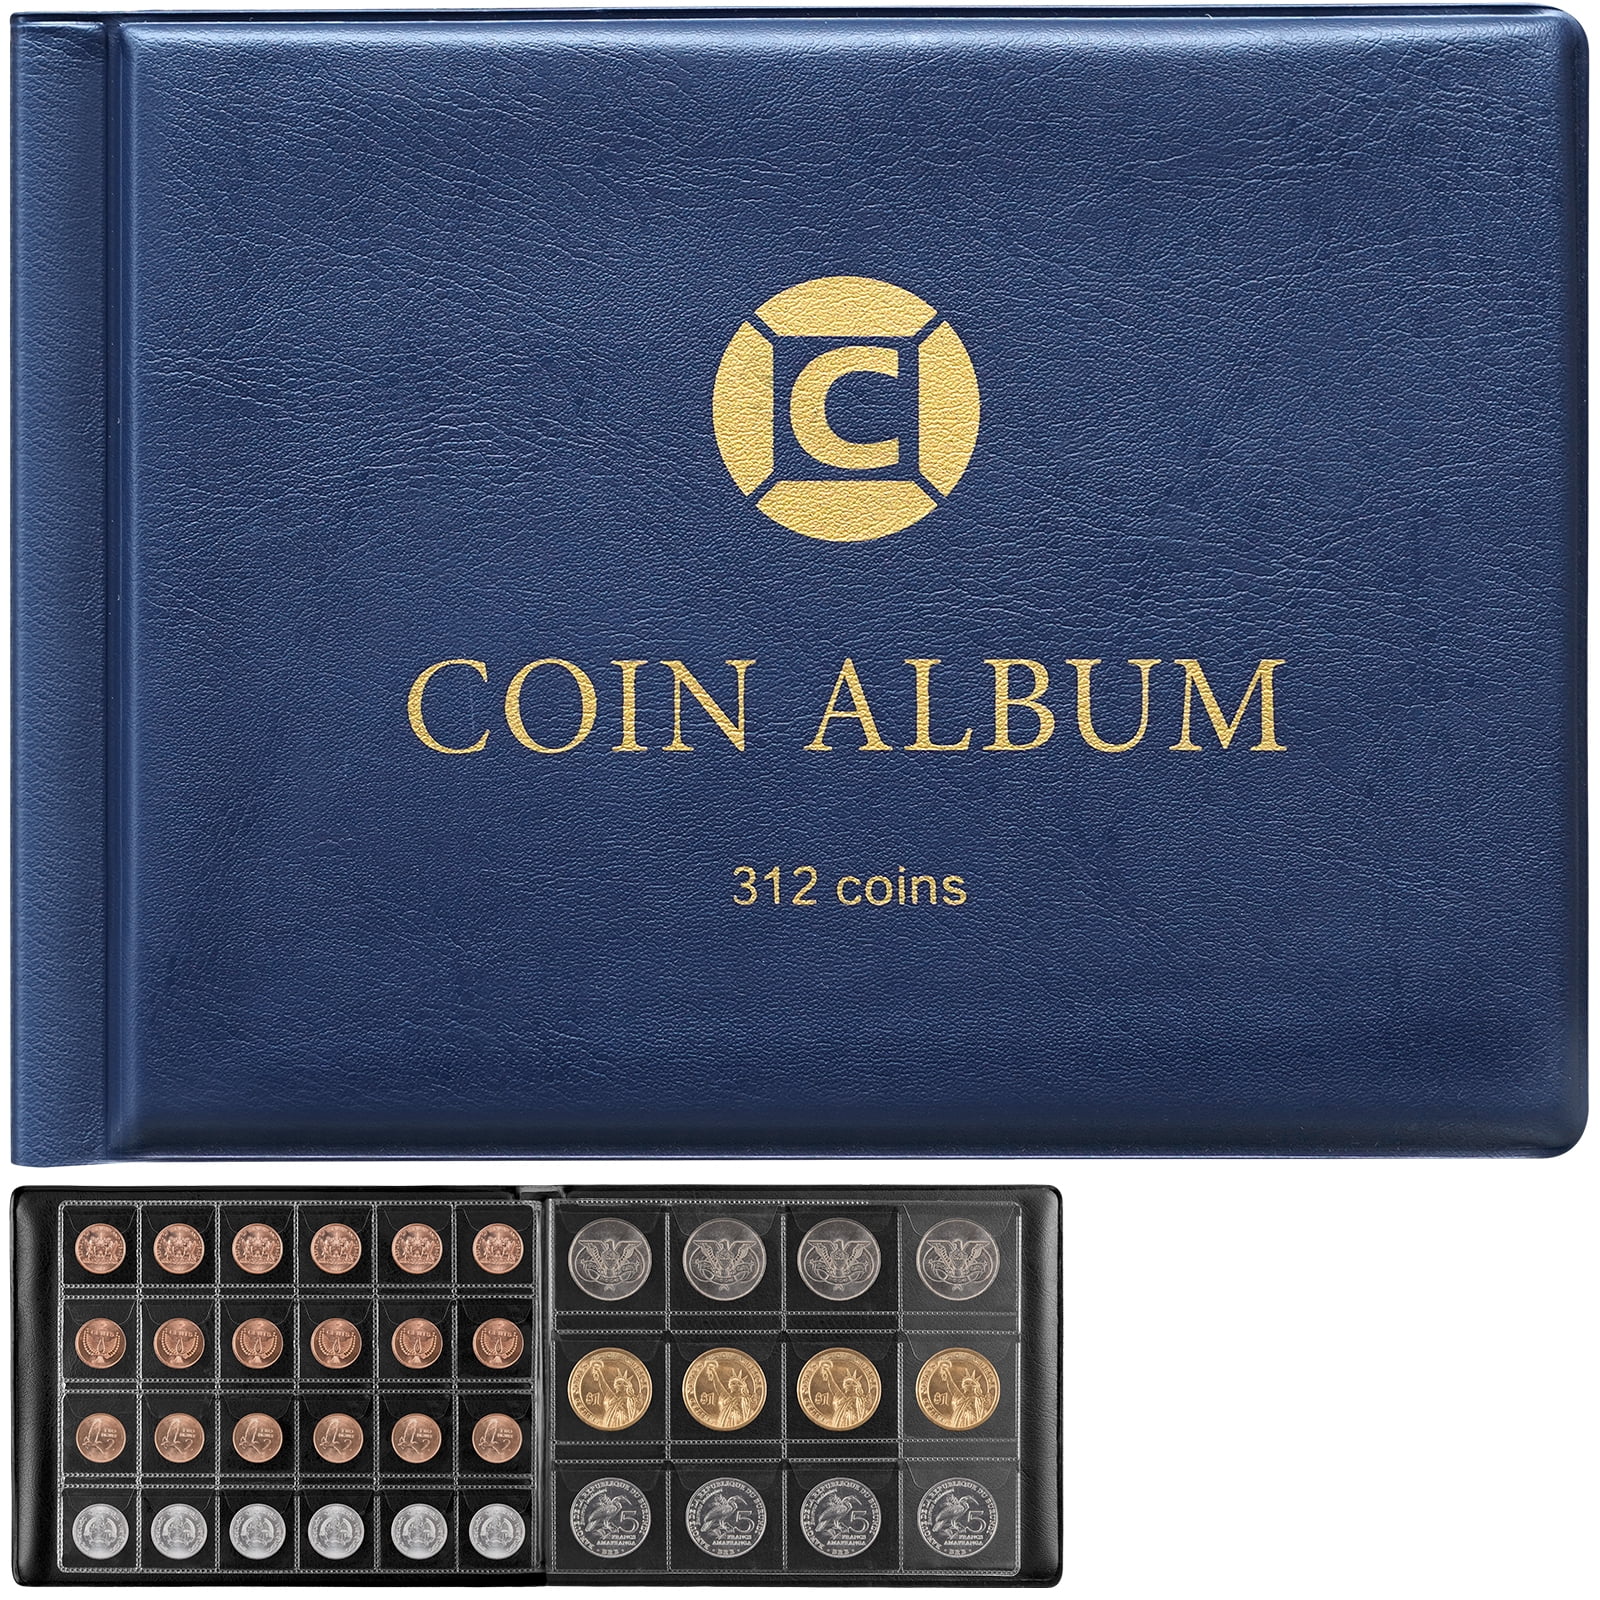 Coin album